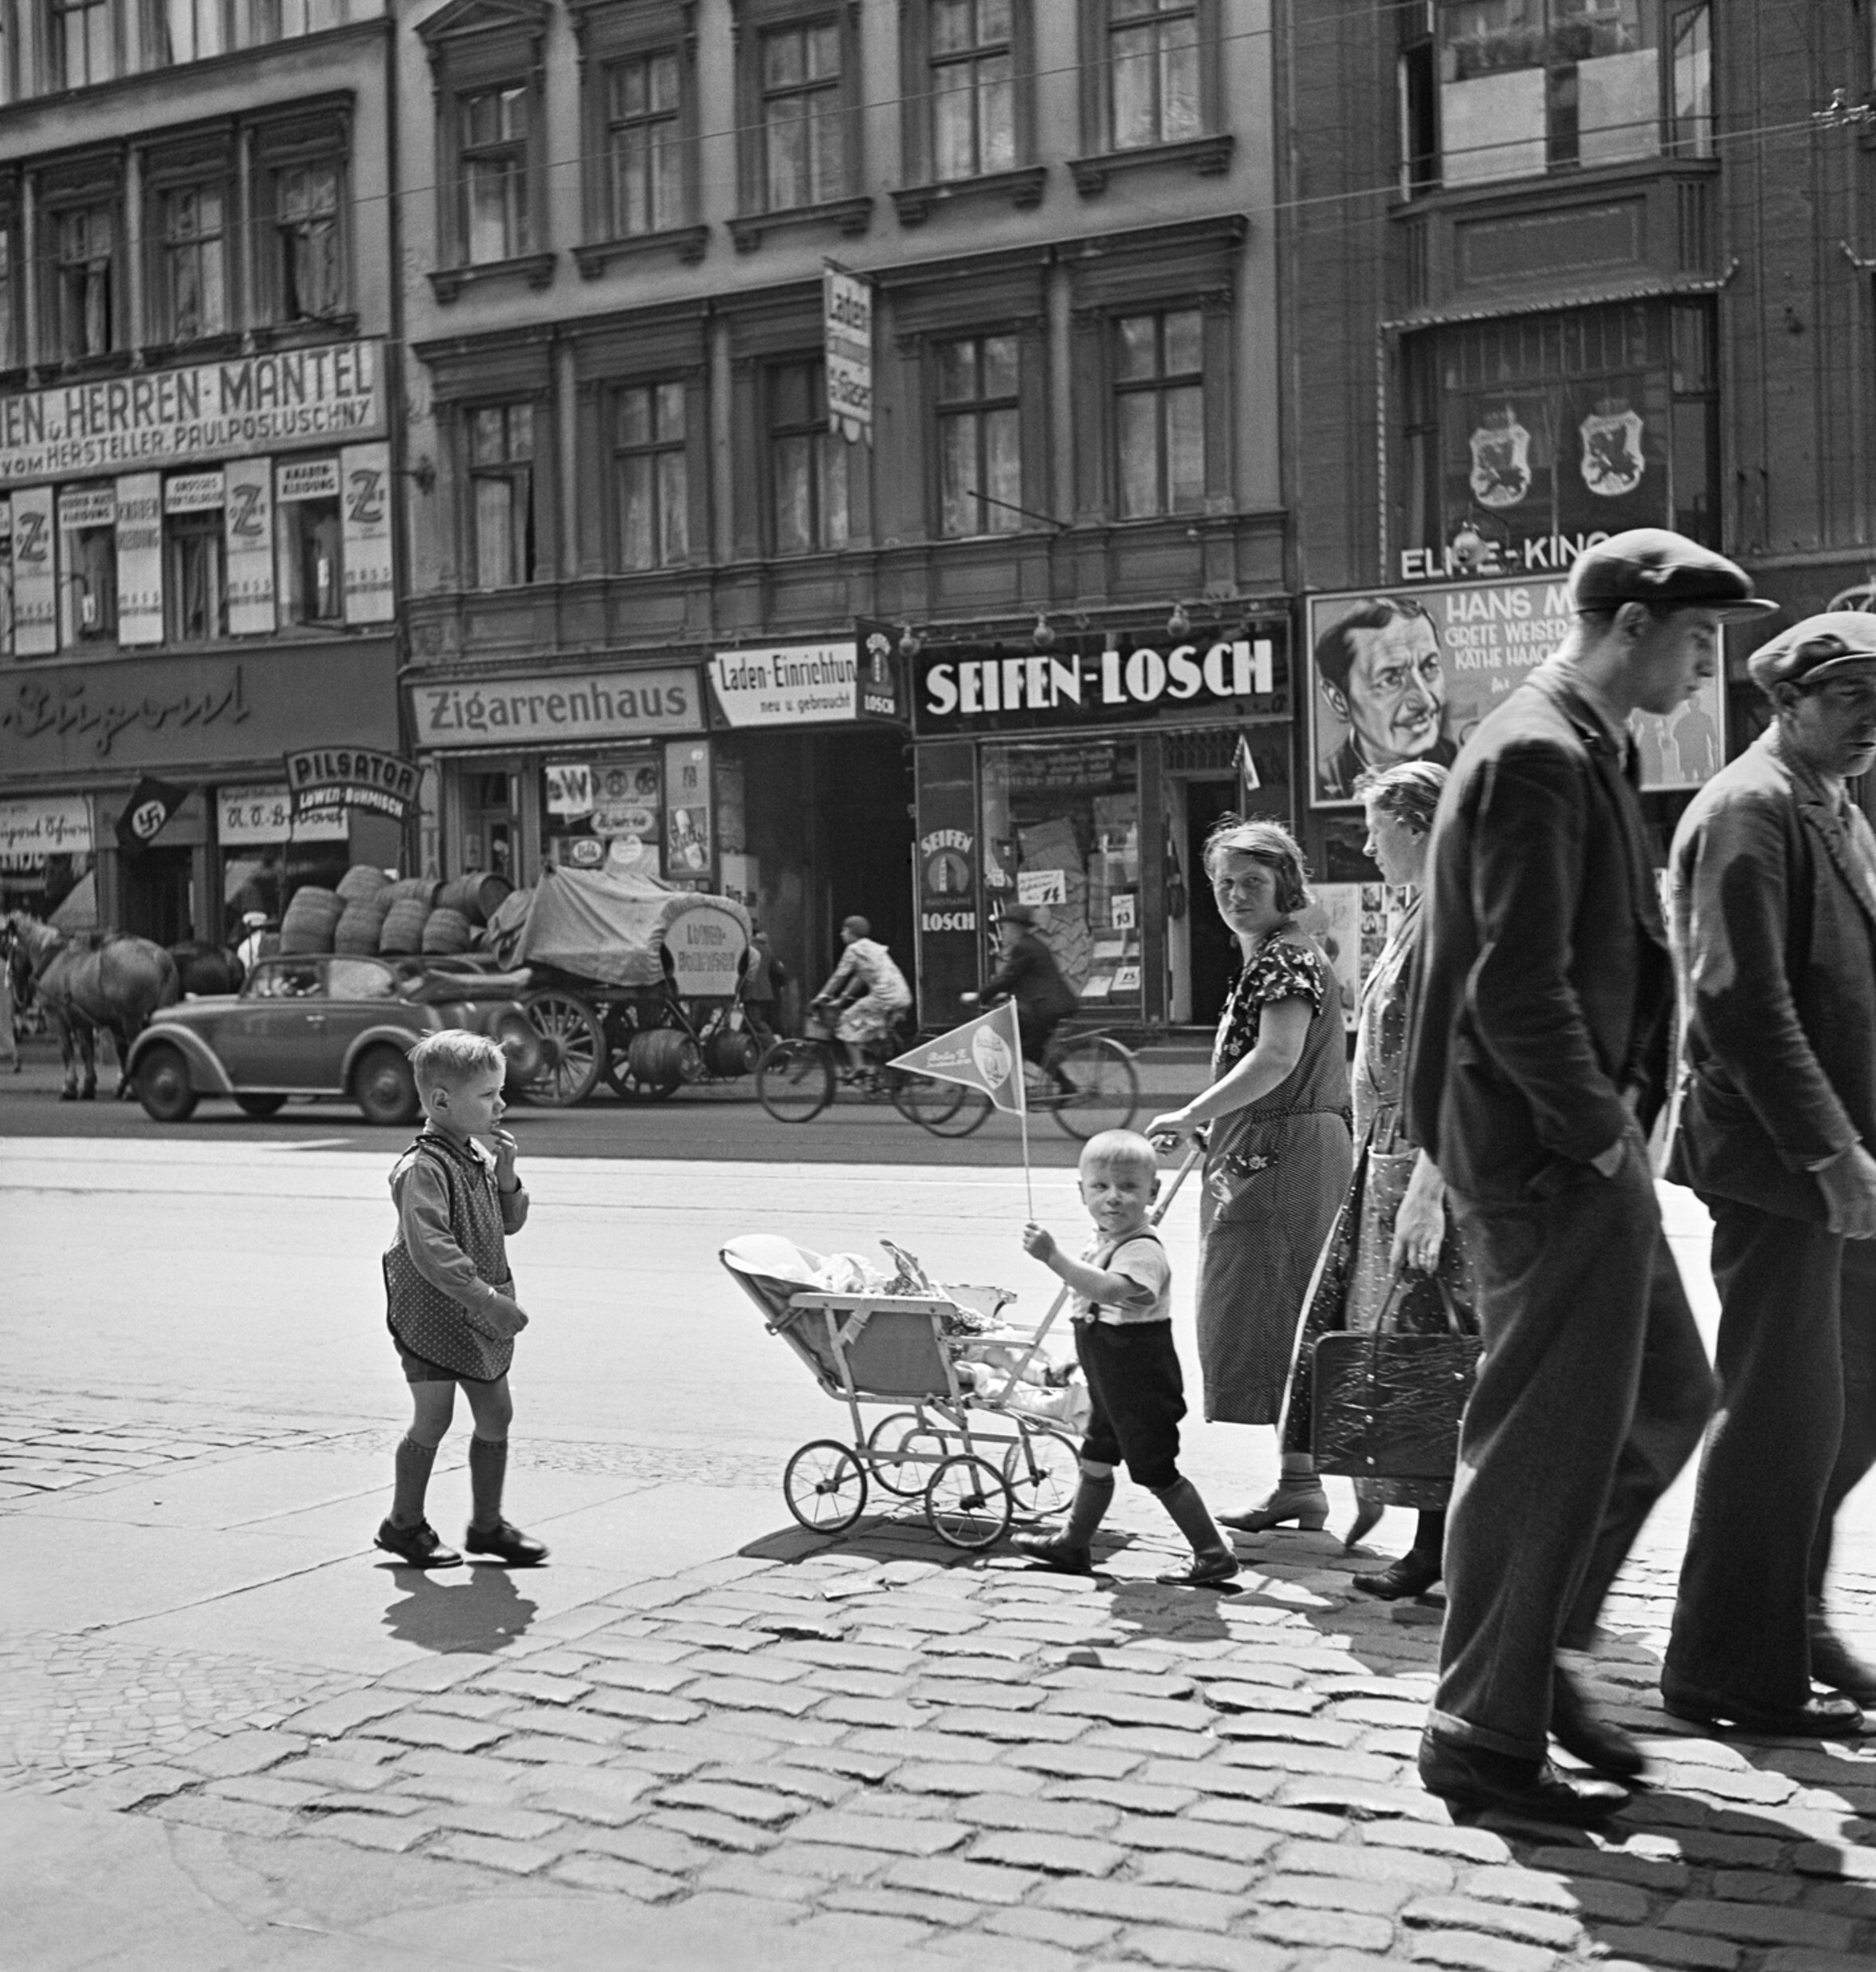 Уличная сцена с флагом со свастикой на витрине магазина (слева), Брунненштрассе, Берлин, ок. 1935 год. Фотограф Роман Вишняк